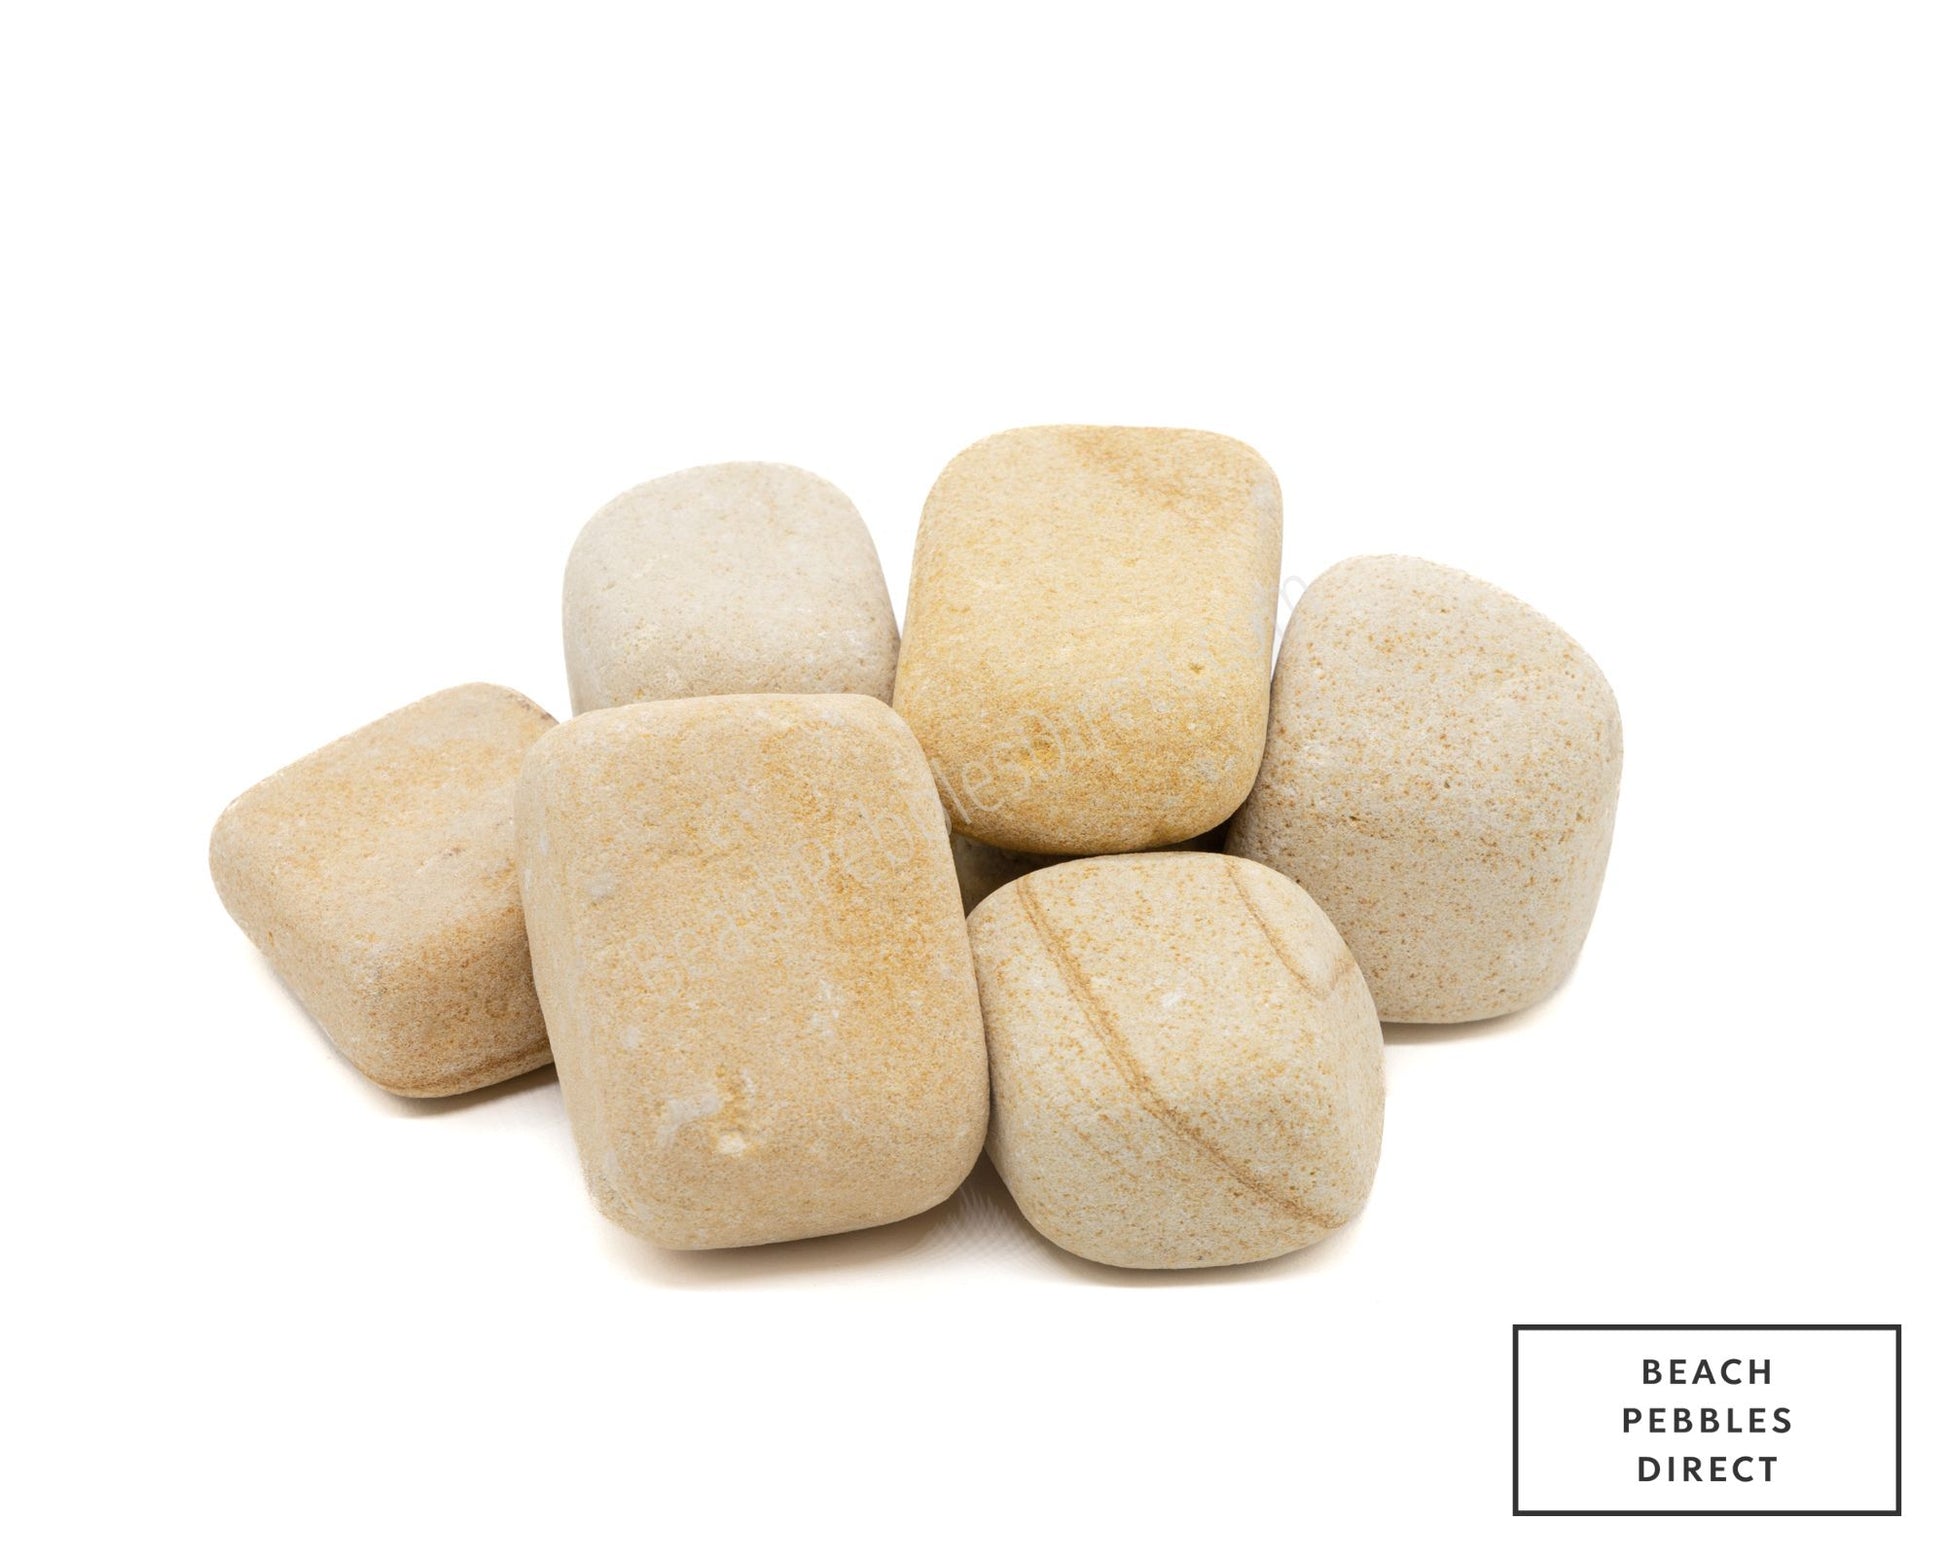 SunStone Pebbles